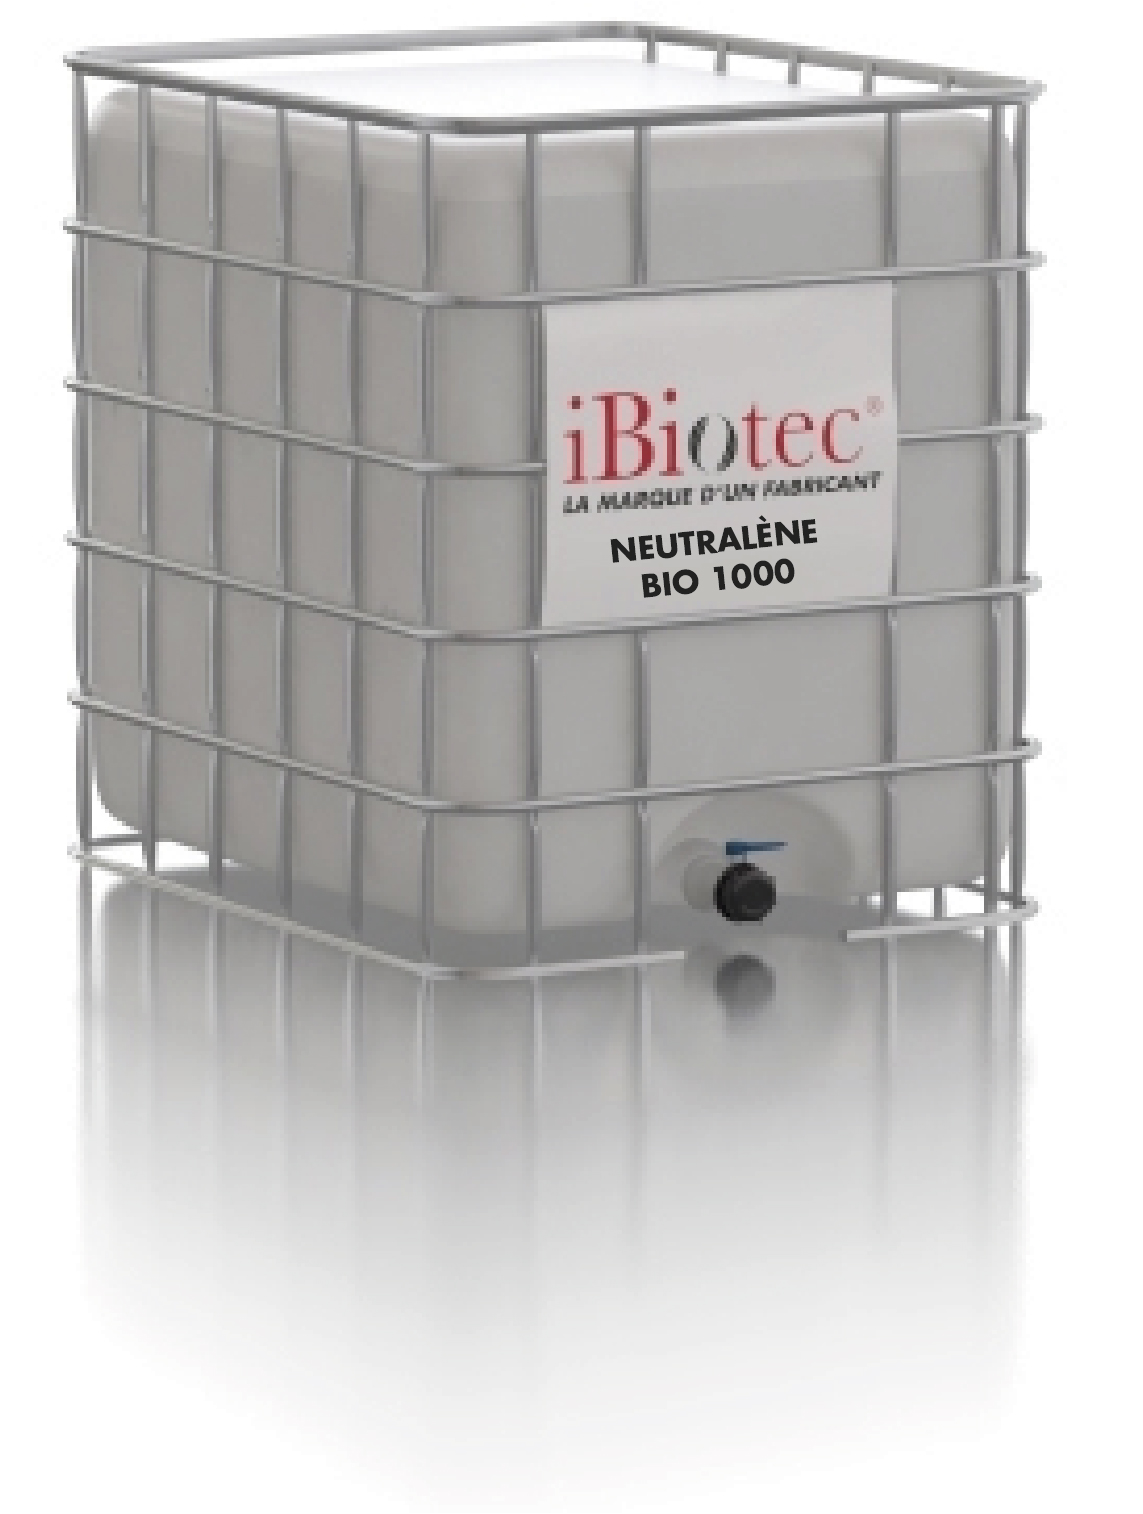 Solvent degresant, pentru curățare, neclasificat ca fiind inflamabil, dezafectarea zonelor ATEX. Nu conține COV, optimizarea PGS (Directiva privind emisiile industriale [IED]). Biodegradabil OCDE. Aprobat NSF K1. Putere mare de decantare în fântânile de degresare. Echipamente detașabile DETECT BLUE® care pot fi localizate și detectate. HACCP BRC8 IFS. solvent degresant de siguranță, neinflamabil. Nu conține COV. Certificat NSF. fântâni speciale de degresare. Se poate utiliza la cald, în mașini de spălat. dielectric. Degresant pentru fântână de curățare, Producător de solvent degresant industrial, solvent degresant neinflamabil, degresant biodegradabil, degresant de siguranță, degresant pentru contactul cu alimentele, solvent pentru fântână, solvent biodegradabil, solvent de siguranță, solvent pentru contactul cu alimentele, solvent degresant, SOLVENȚI, solvent degresant fără cov, solvent degresant non-cov, solvent pentru fântâni de curățare, degresant pentru fântâni cu solvenți, solvent dielectric. Producători de solvenți industriali. furnizori de solvenți industriali. solvenți industriali. solvent neinflamabil. Solvent certificat NSF. Solvent pentru industria alimentară. Solvent cu utilizare la cald. Solvent fără COV. Solvent pentru fântână. solvenți pentru fântâni de degresare. Noi solvenți. Nou solvent. Solvent pentru fântână de degresare. Înlocuitor de diclormetan. Înlocuitor de clorură de metilen. Înlocuitor ch2 cl2. Înlocuitori de CMR. Înlocuitor de acetonă. Înlocuitor de acetonă. Înlocuitor de NMP. Solvent pentru poliuretani. Solvent pentru epoxy. Solvent poliester. Solvent lipiciuri. Solvent vopsele. Solvent rășini. Solvent lacuri. Solvent elastomeri. Produs de întreținere industrială